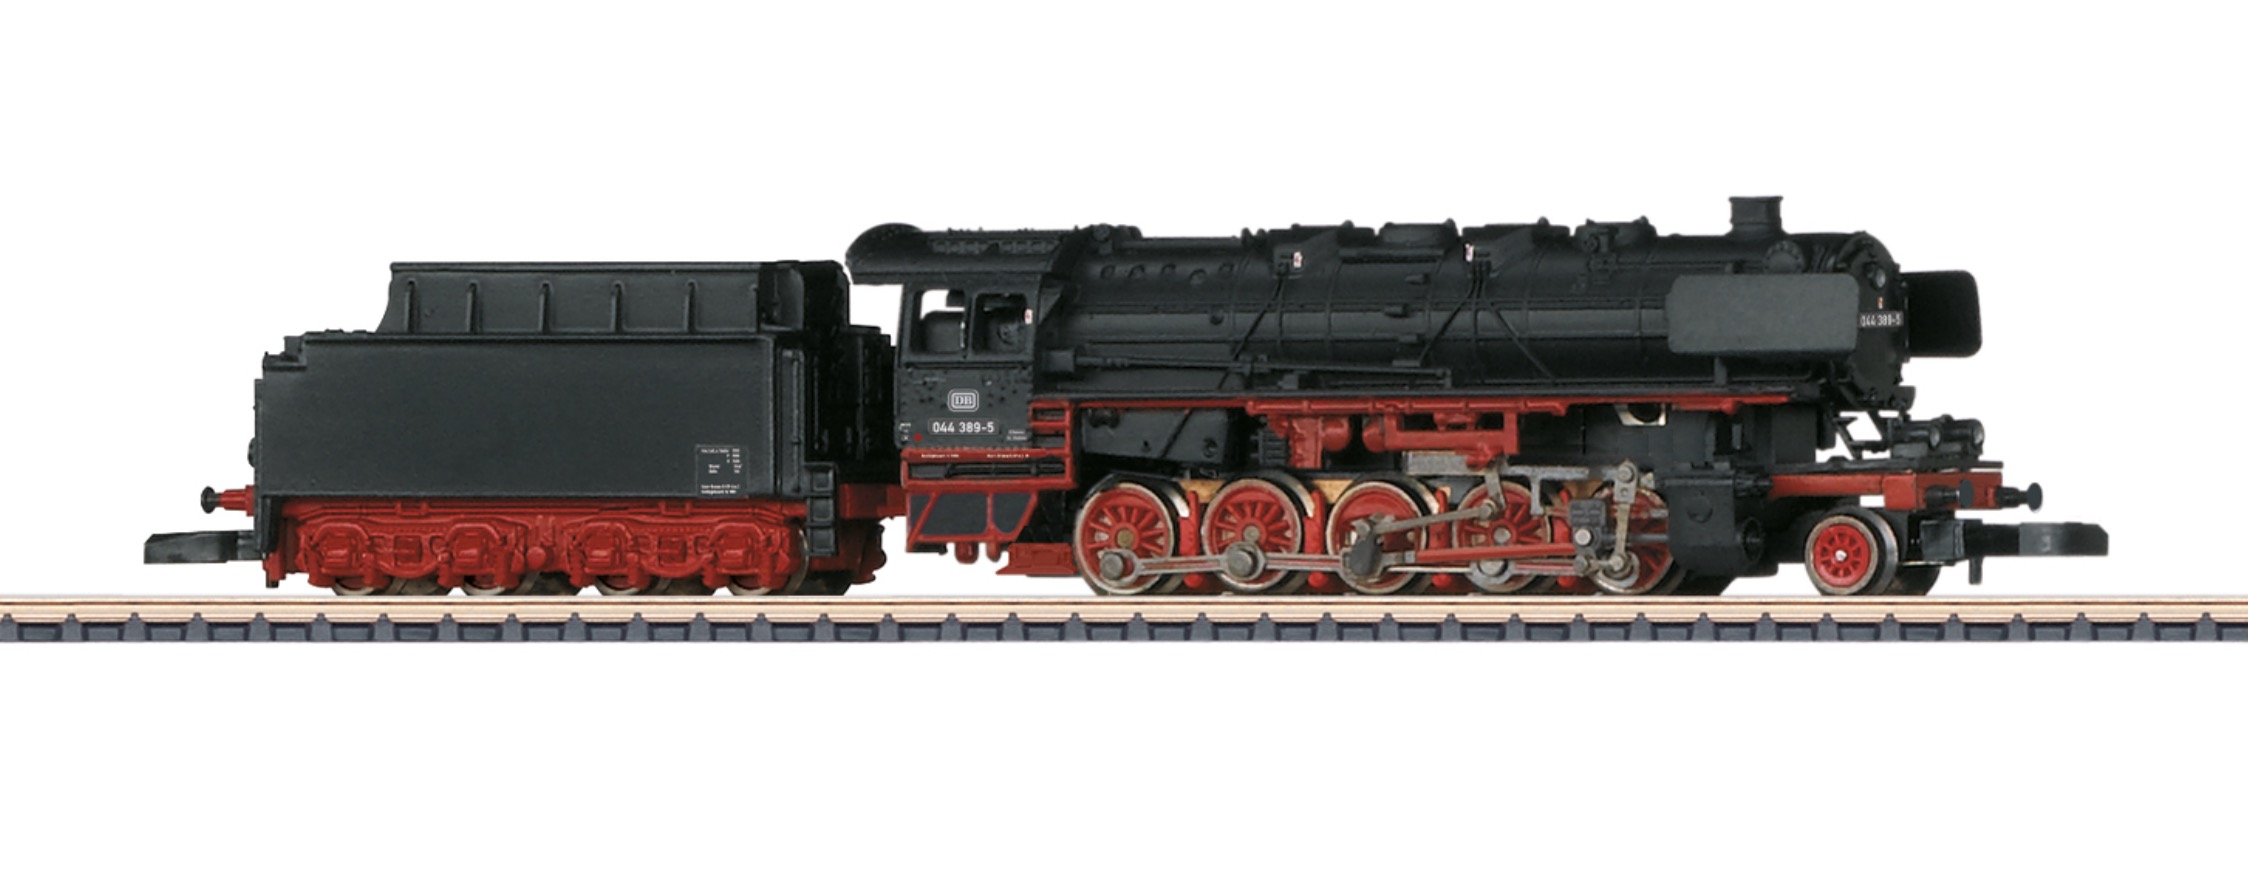 Z Scale - Märklin - 88976 - Locomotive, Steam, 2-10-0, Class 44, Epoch VI - Deutsche Bundesbahn - 044 389-5